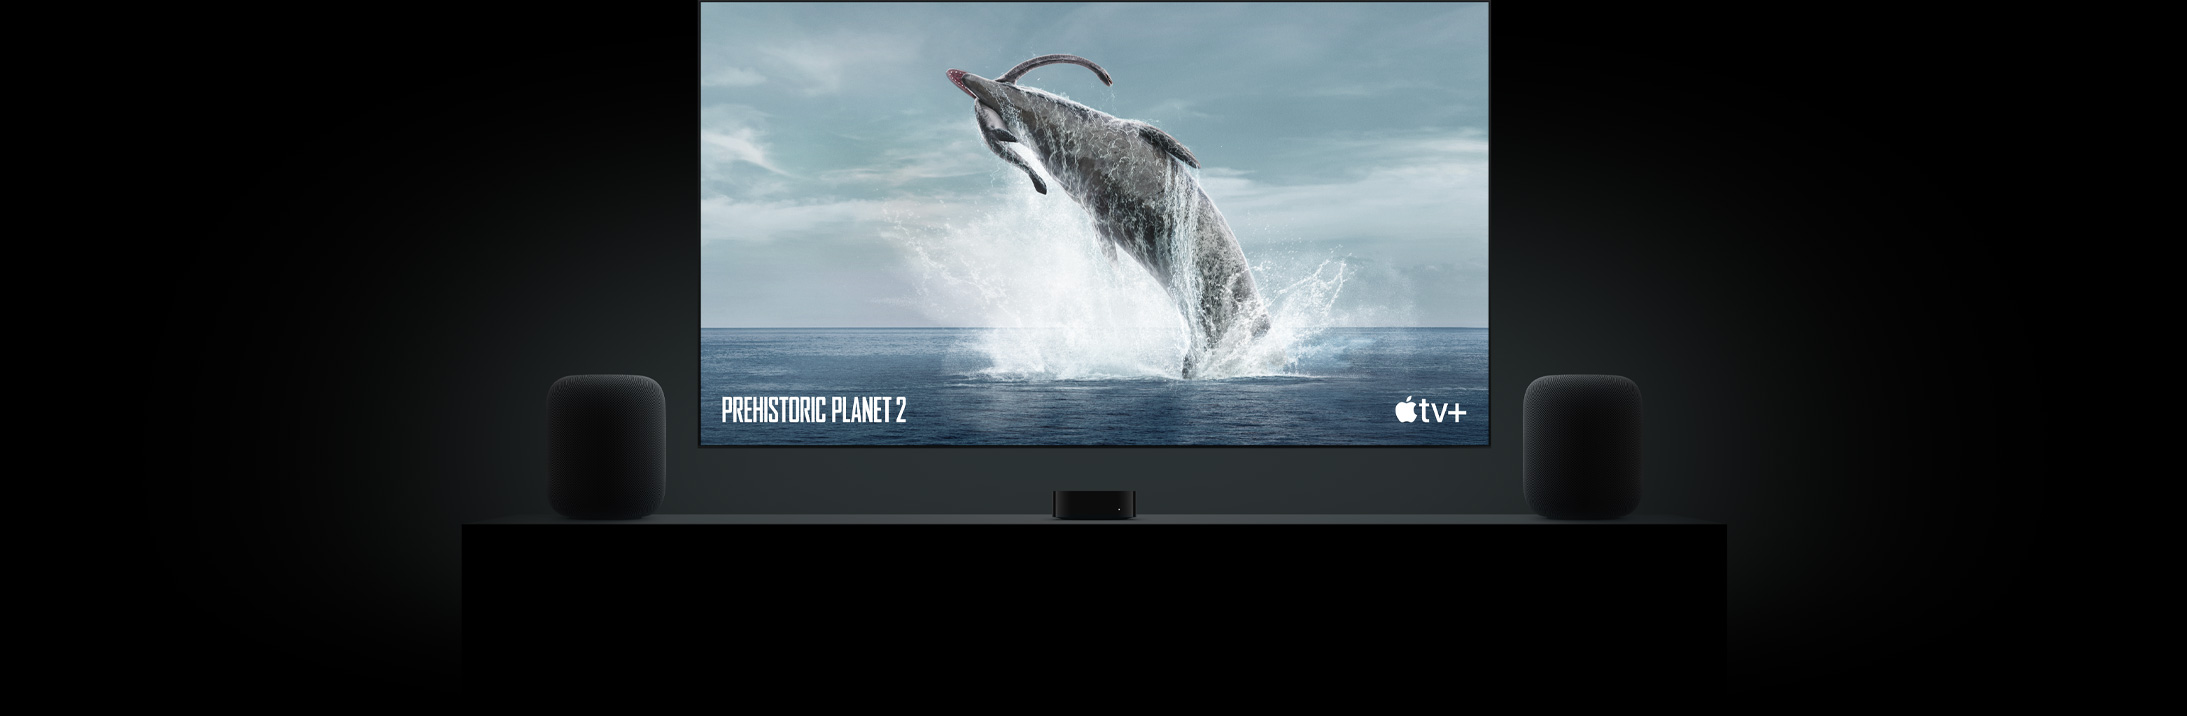 Grote flatscreen-tv met daarop een levendige afbeelding van een dinosaurus uit Prehistoric Planet. De tv hangt boven een Apple TV en aan weerskanten staan HomePod-speakers die op een tv-meubel zijn geplaatst